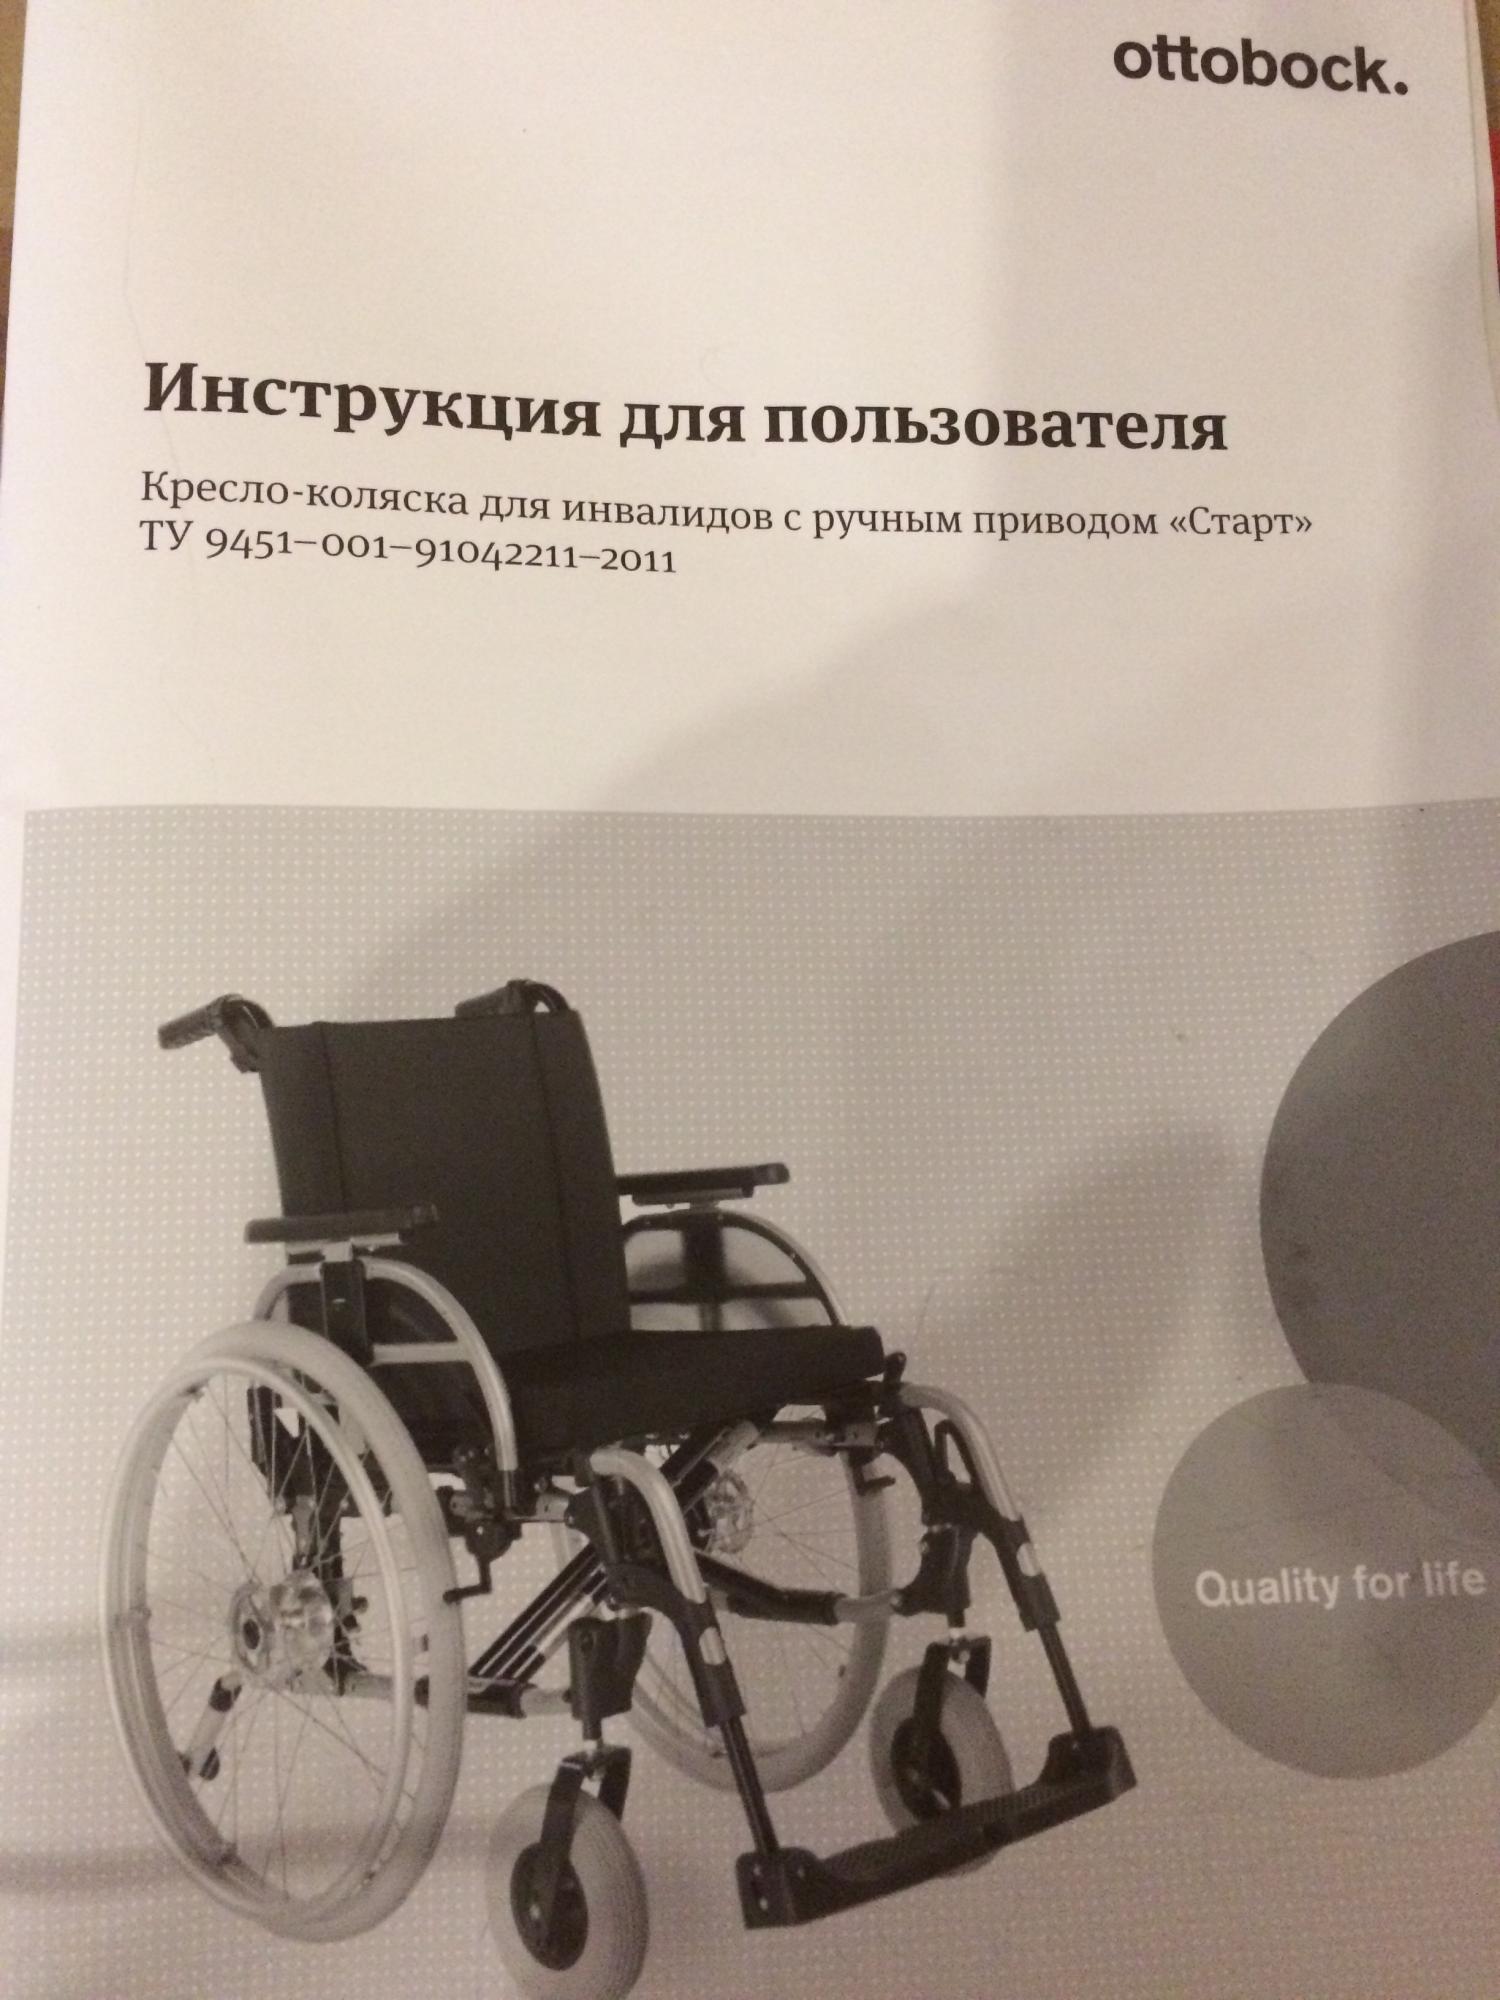 Инструкция по сборке инвалидной коляски старт ту 9451 - 001 - 91042211 - 2011